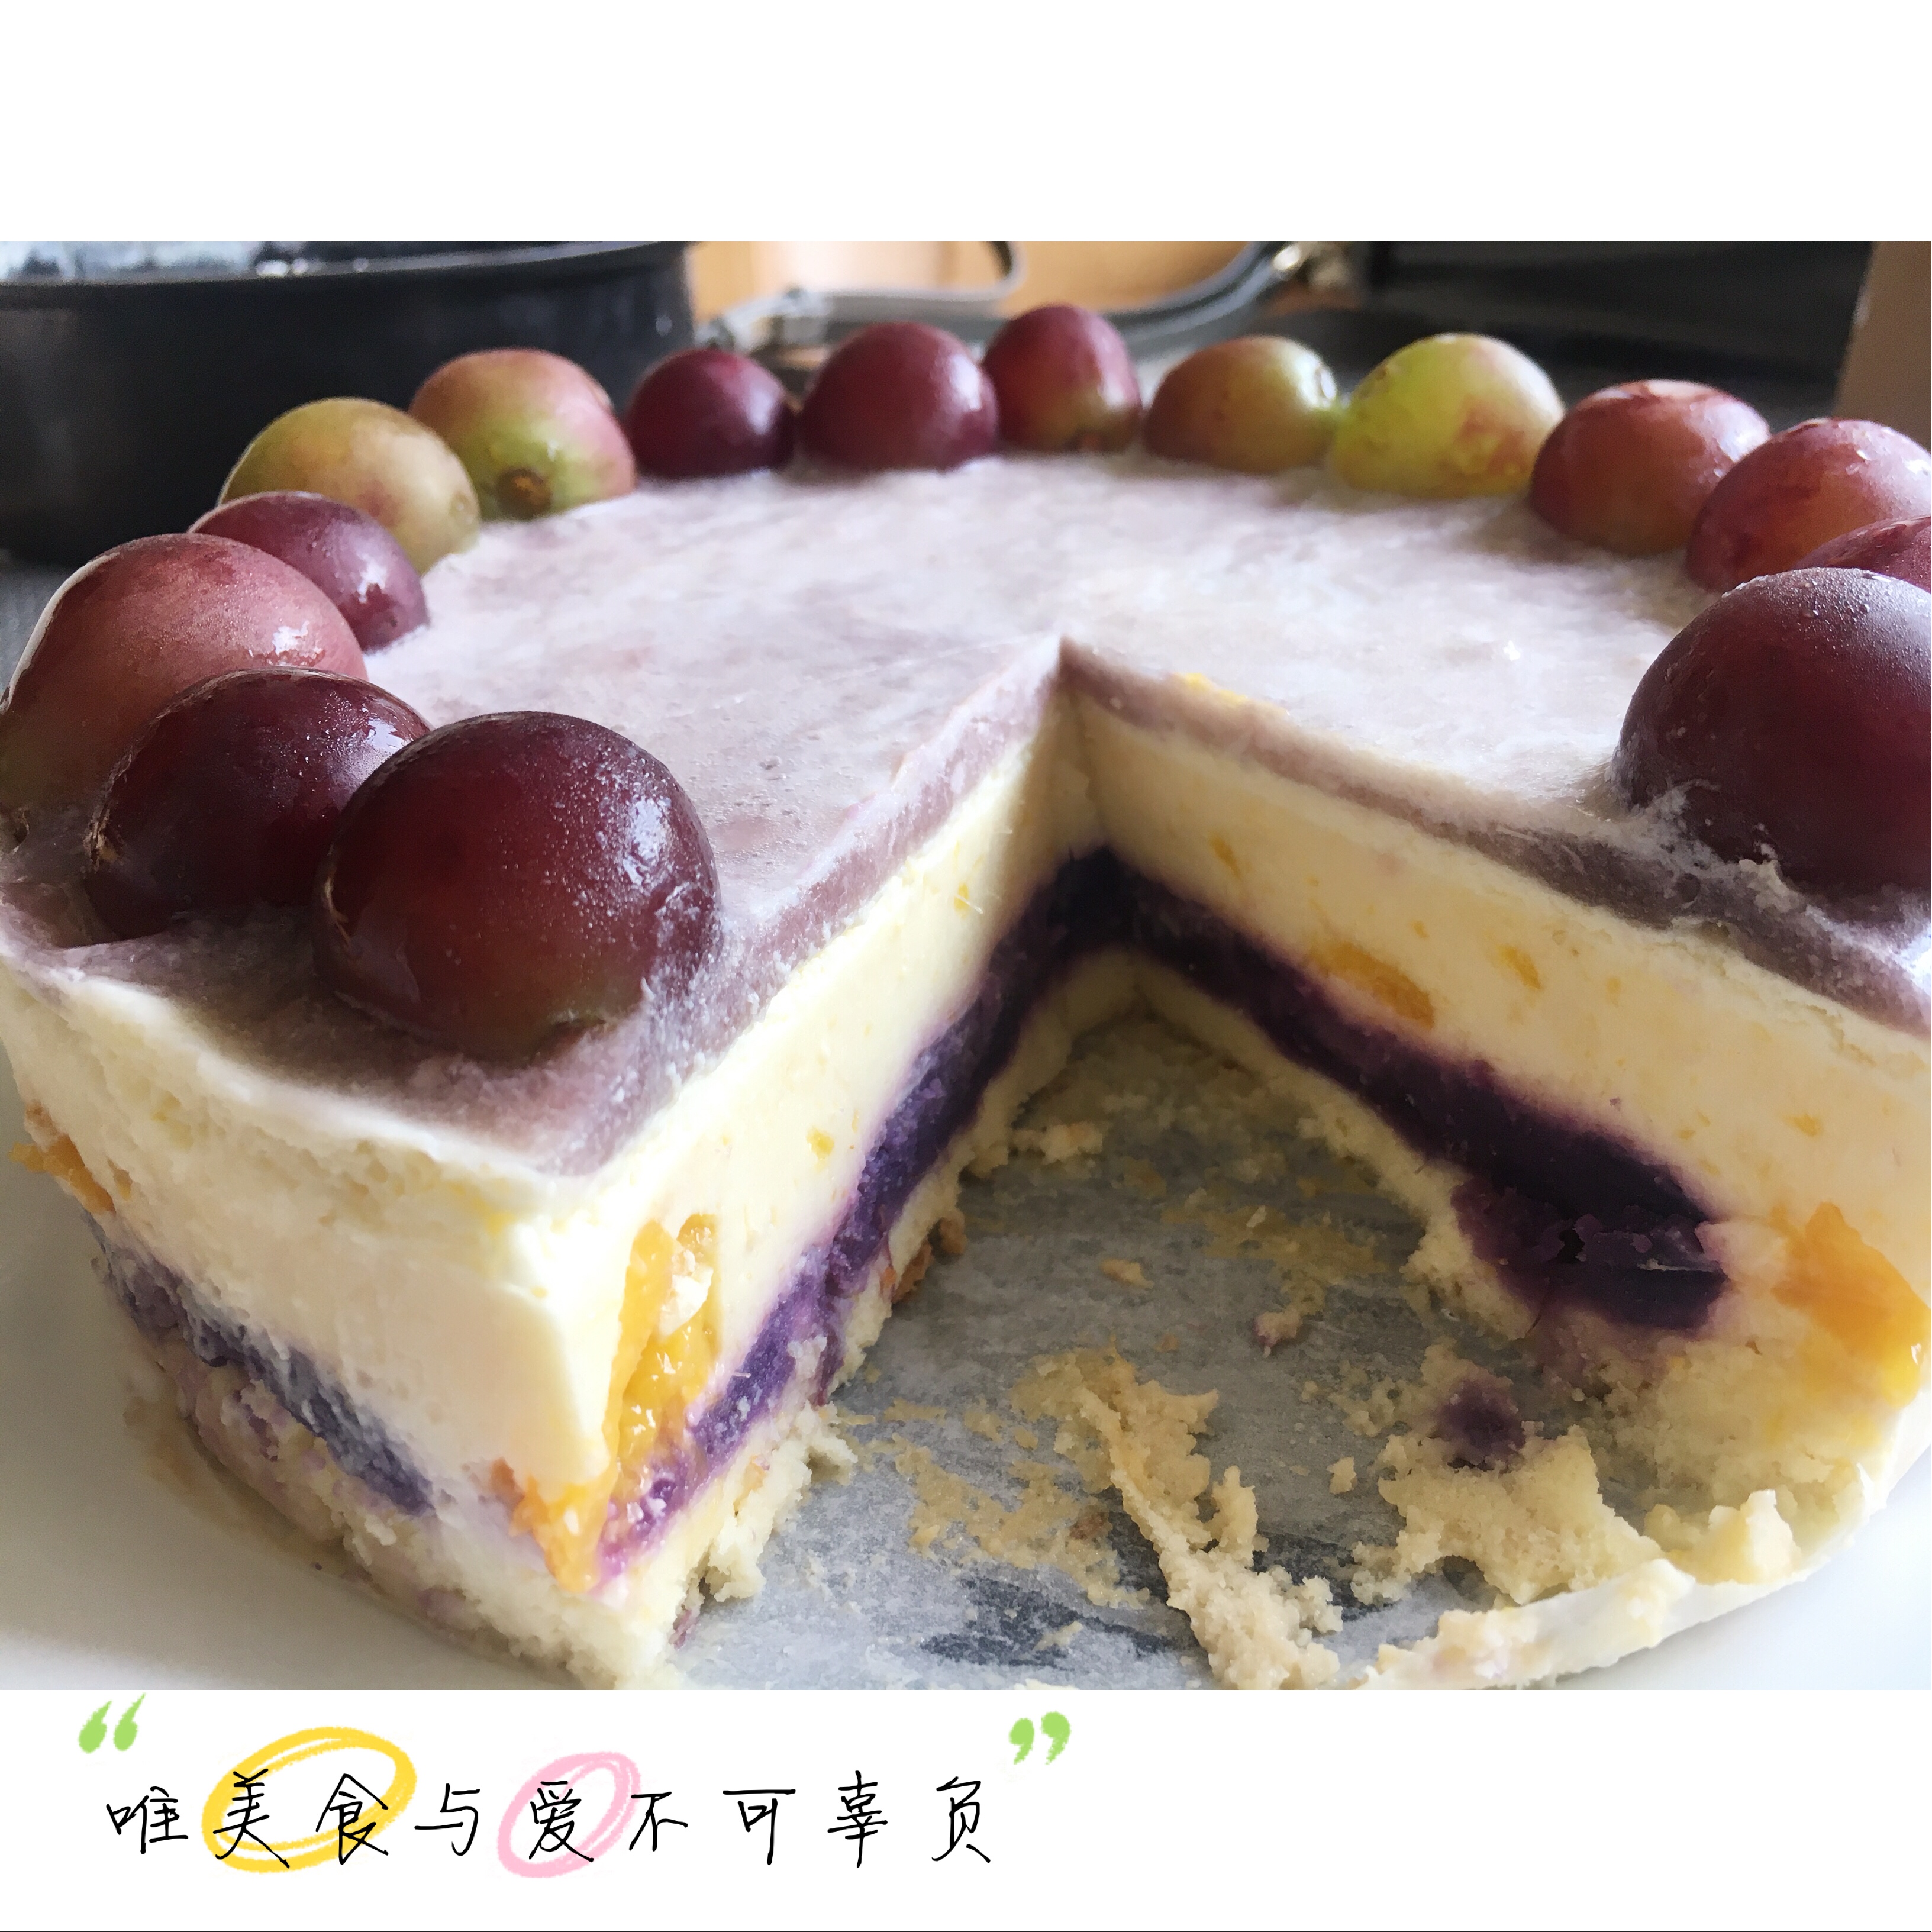 紫薯酸奶芒果慕斯蛋糕